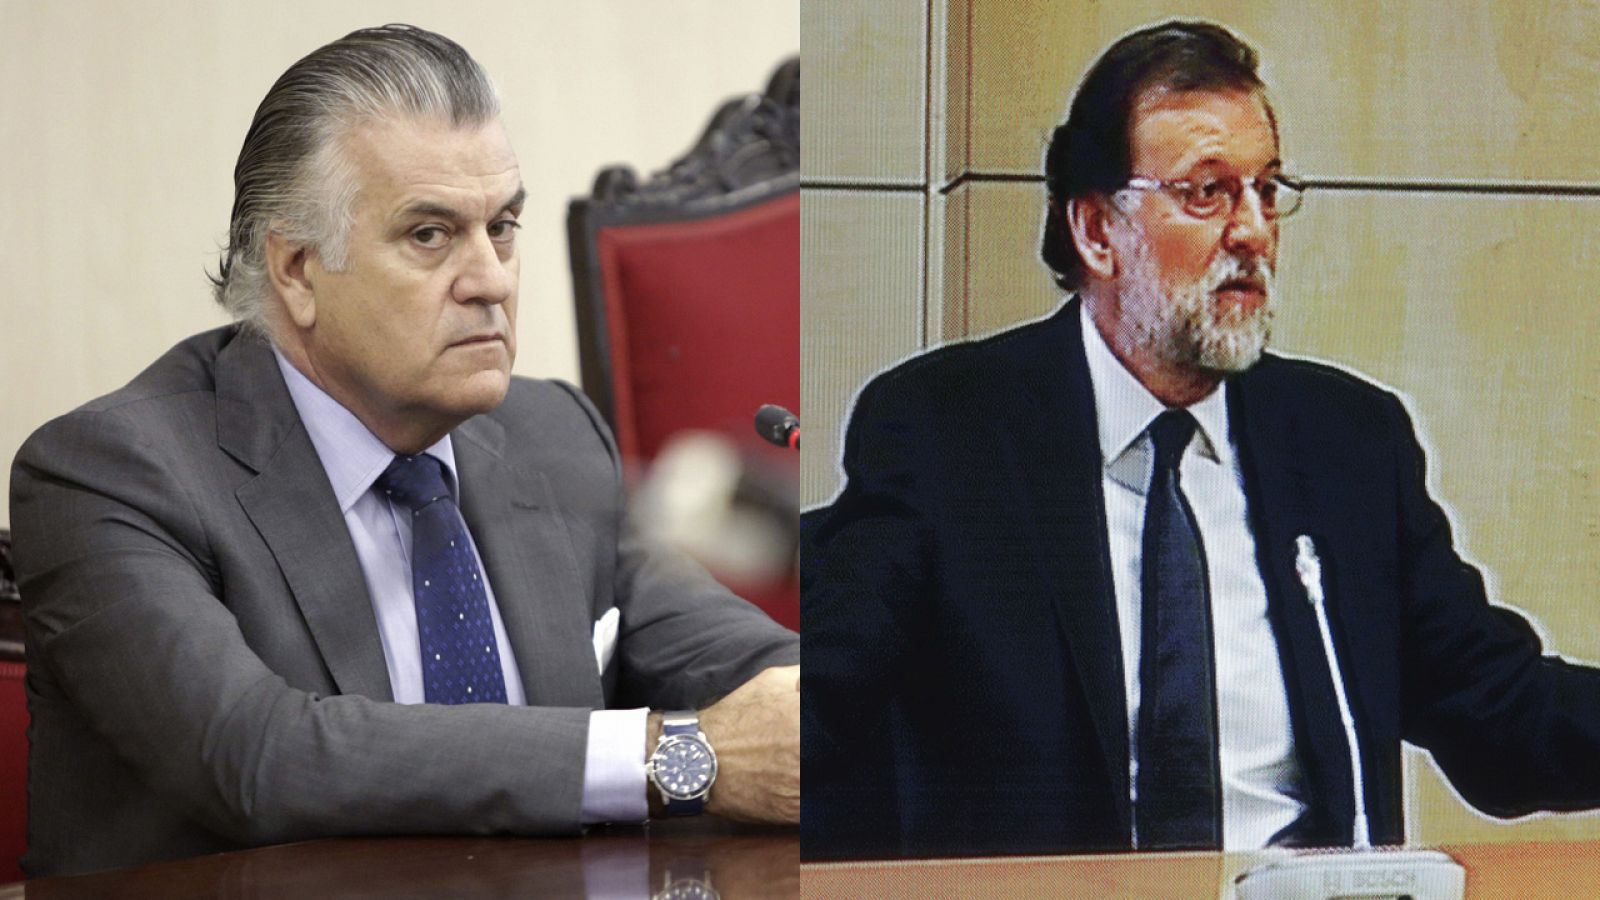 Bárcenas y Rajoy, en sendas comparencias judiciales. (Composición con fotografías de Efe)